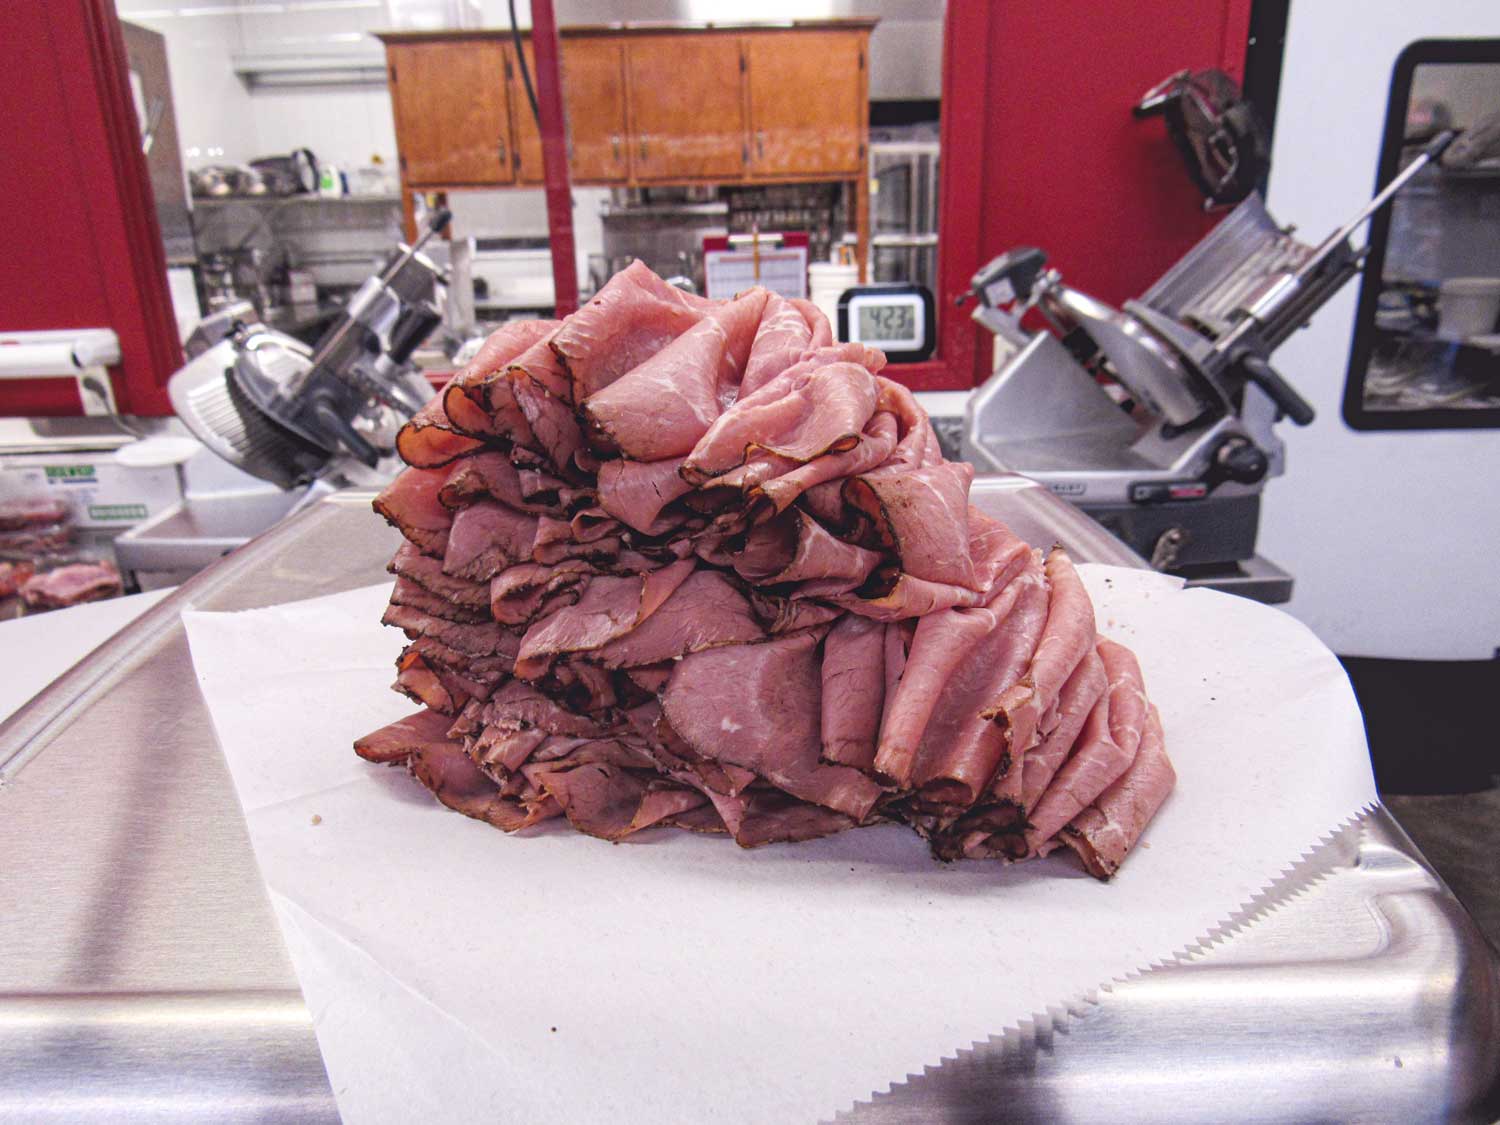 Pile of sliced roast beef on platter